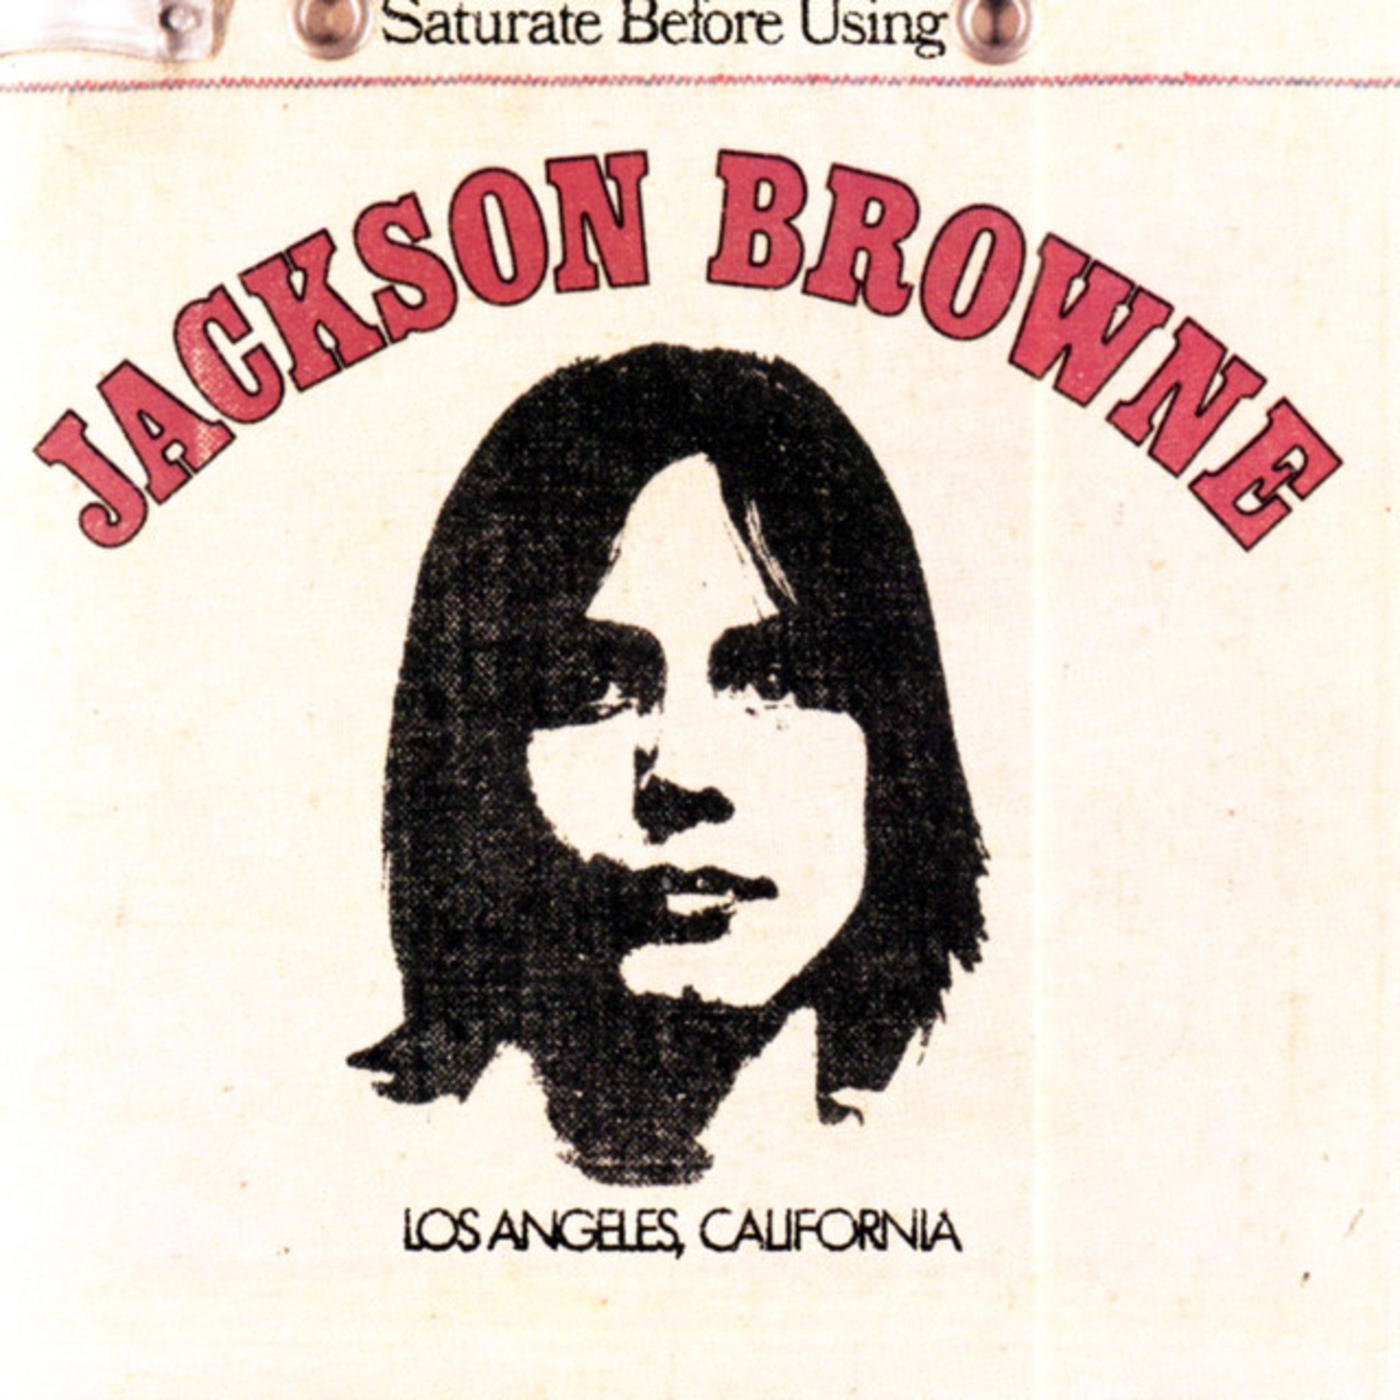 Jackson Browne (Saturate Before Using)